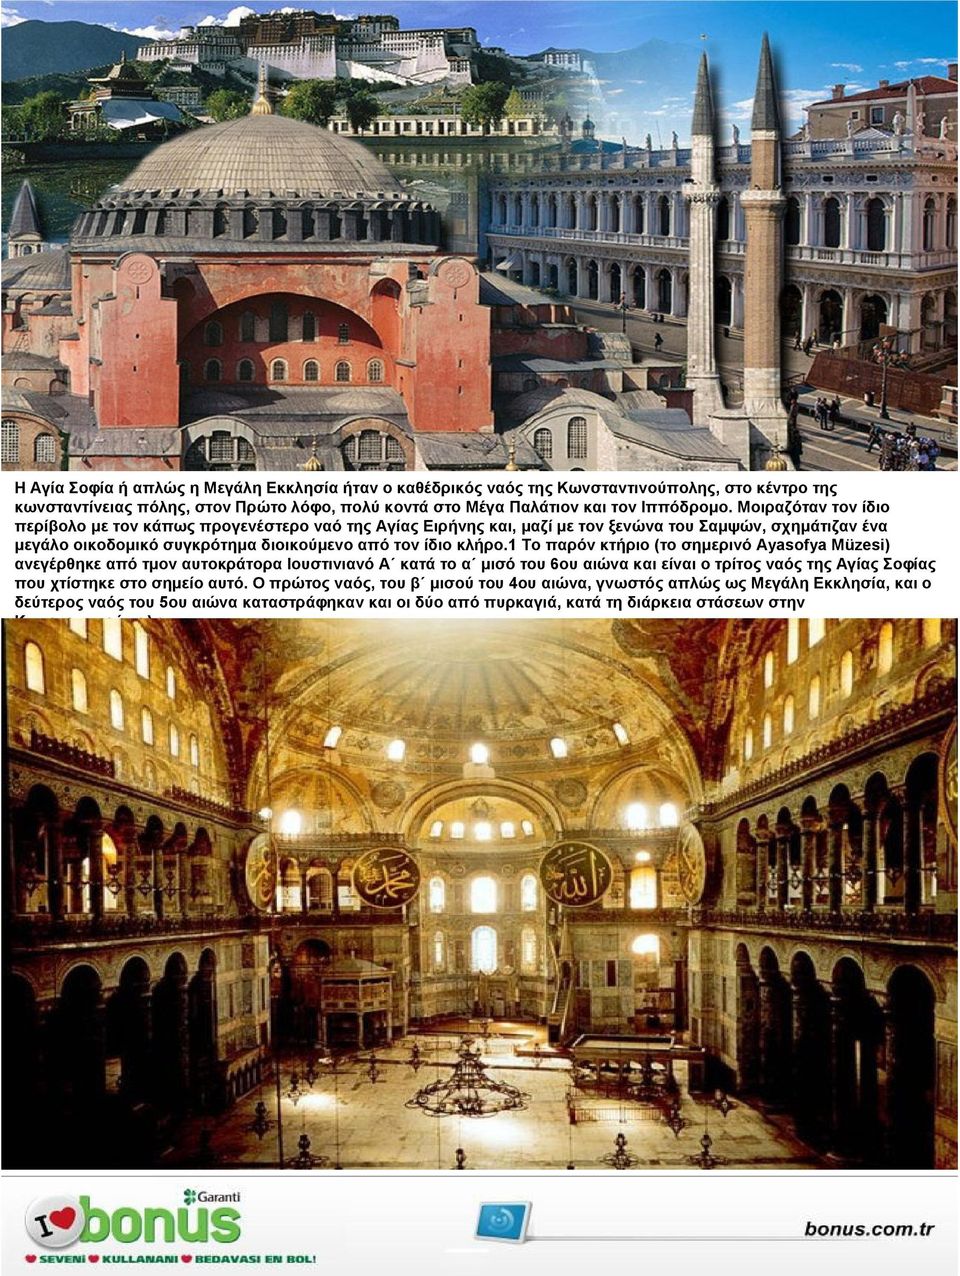 1 Το παρόν κτήριο (το σηµερινό Ayasofya Müzesi) ανεγέρθηκε από τµον αυτοκράτορα Ιουστινιανό Α κατά το α µισό του 6ου αιώνα και είναι ο τρίτος ναός της Αγίας Σοφίας που χτίστηκε στο σηµείο